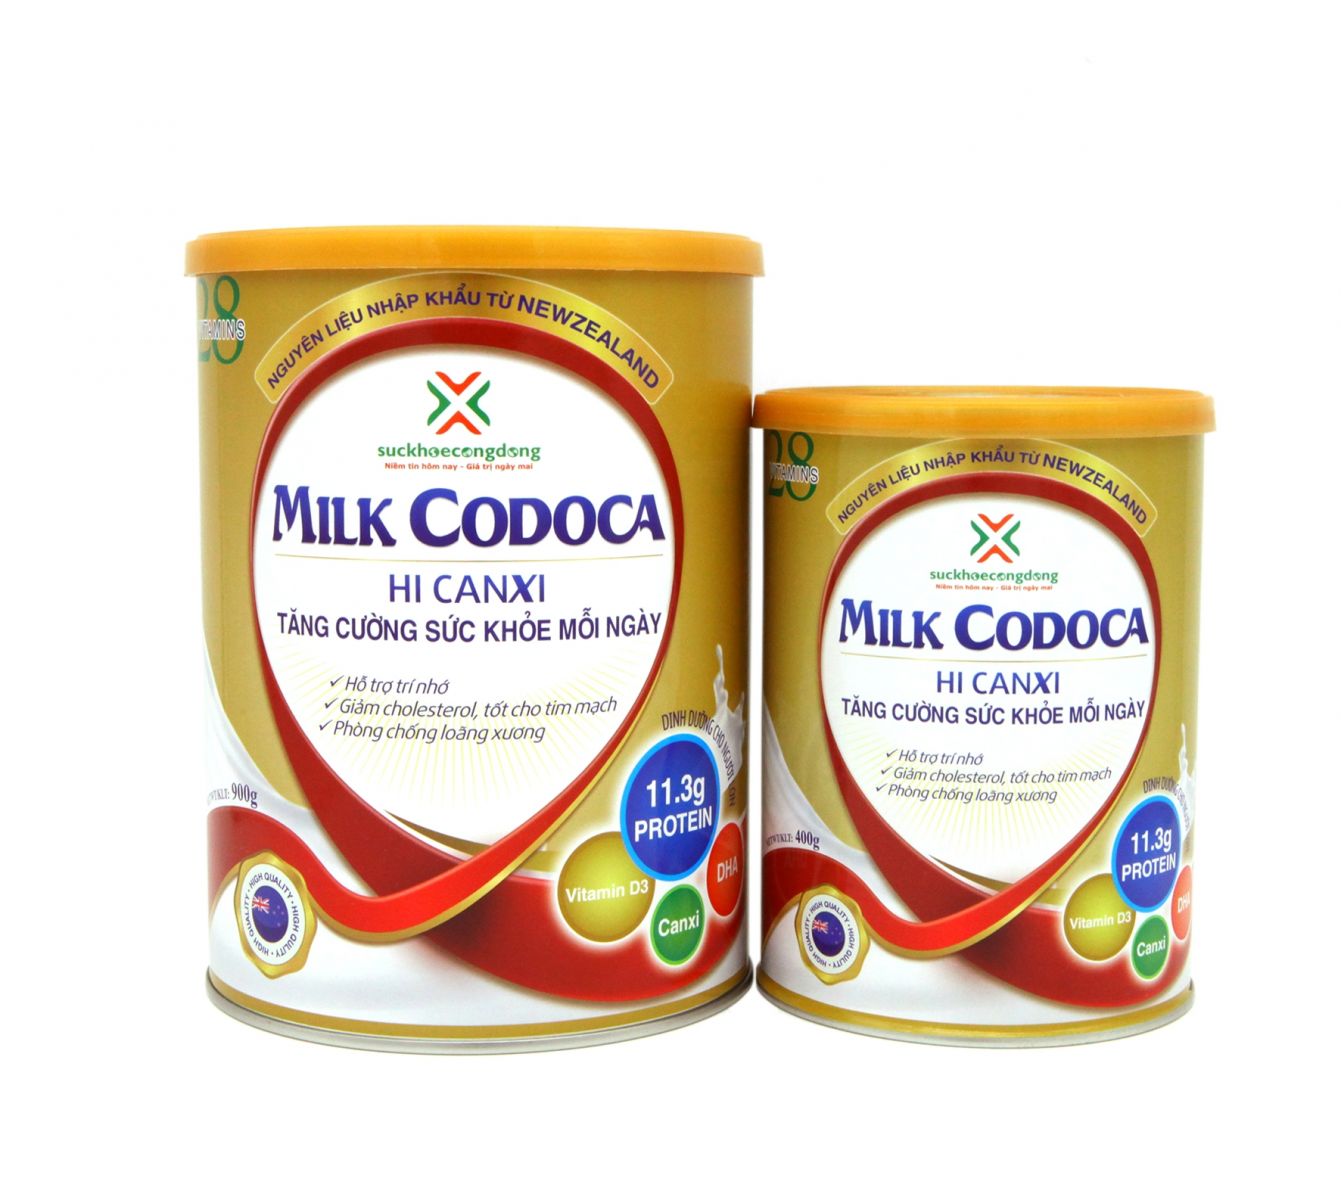 Sản phẩm MILK CODOCA nguồn Canxi vô tận cho cơ thể!